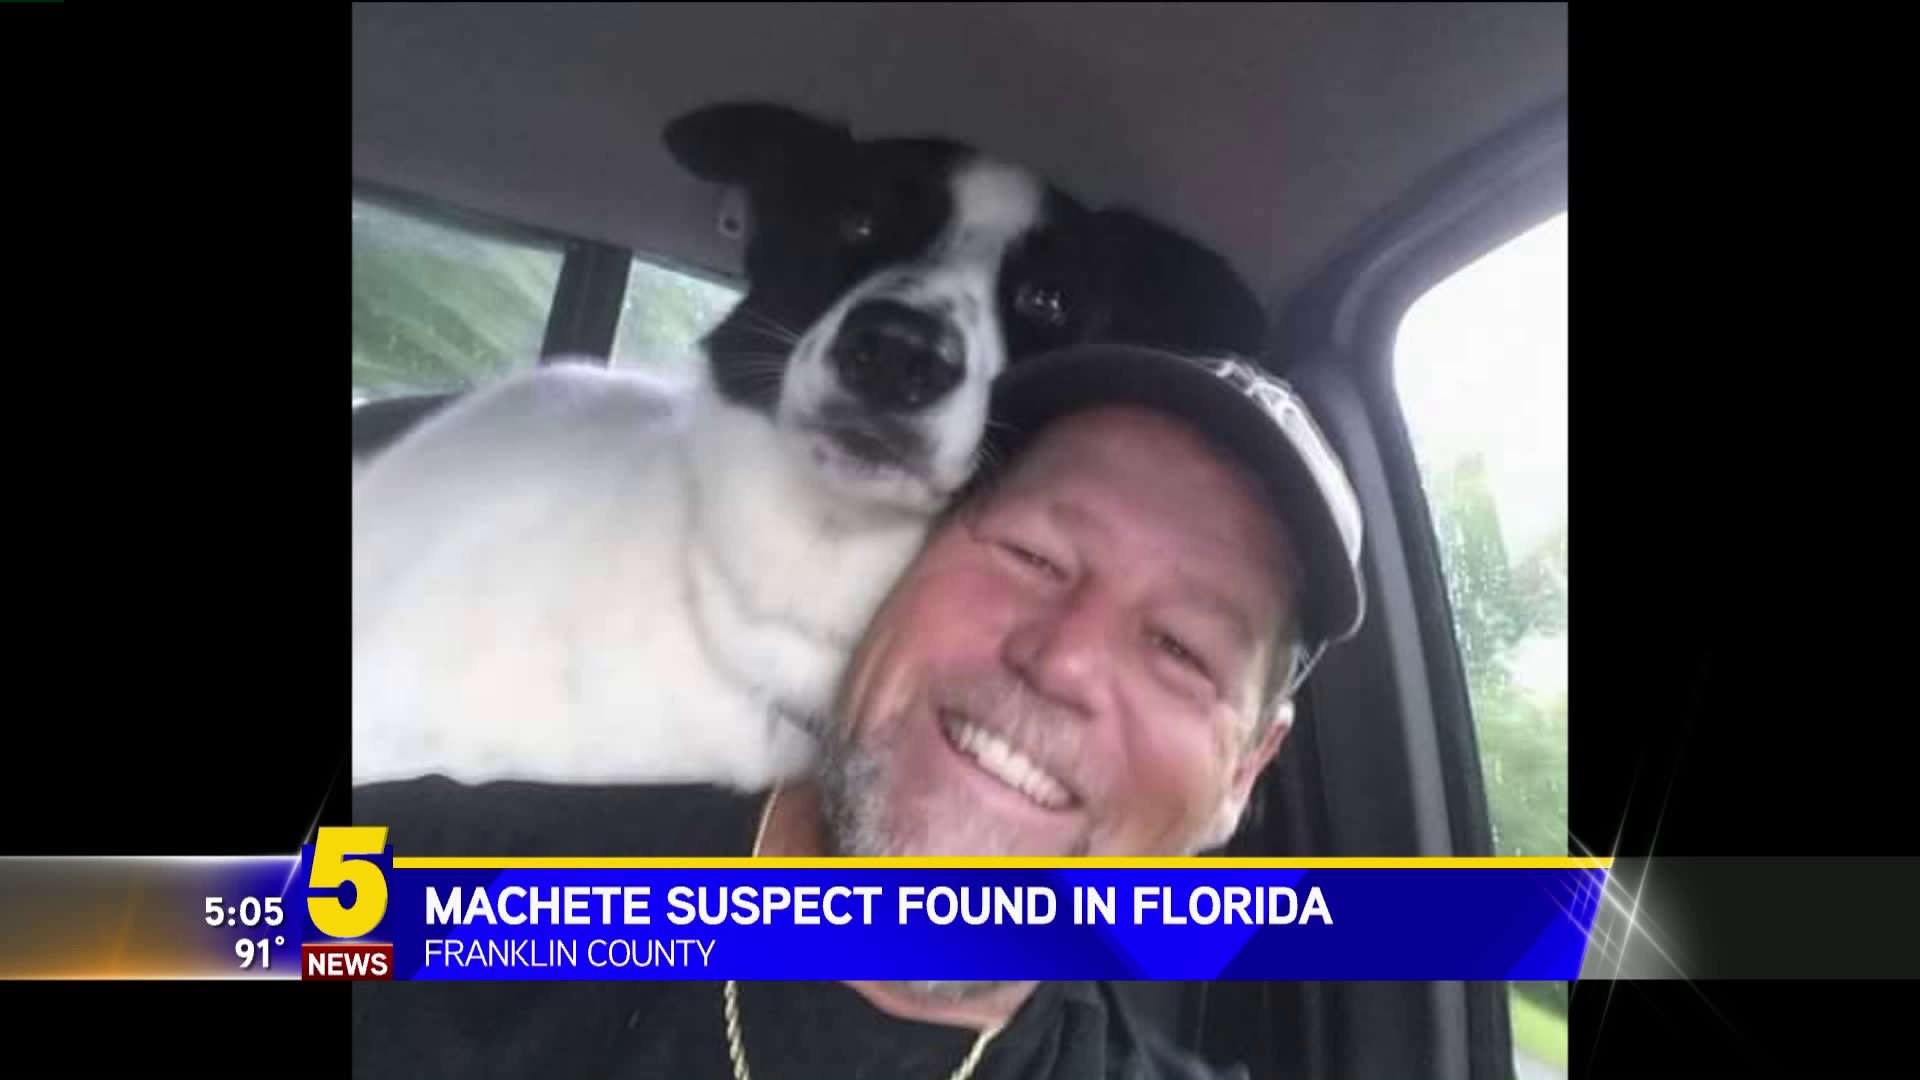 Machete Suspect Found In Florida